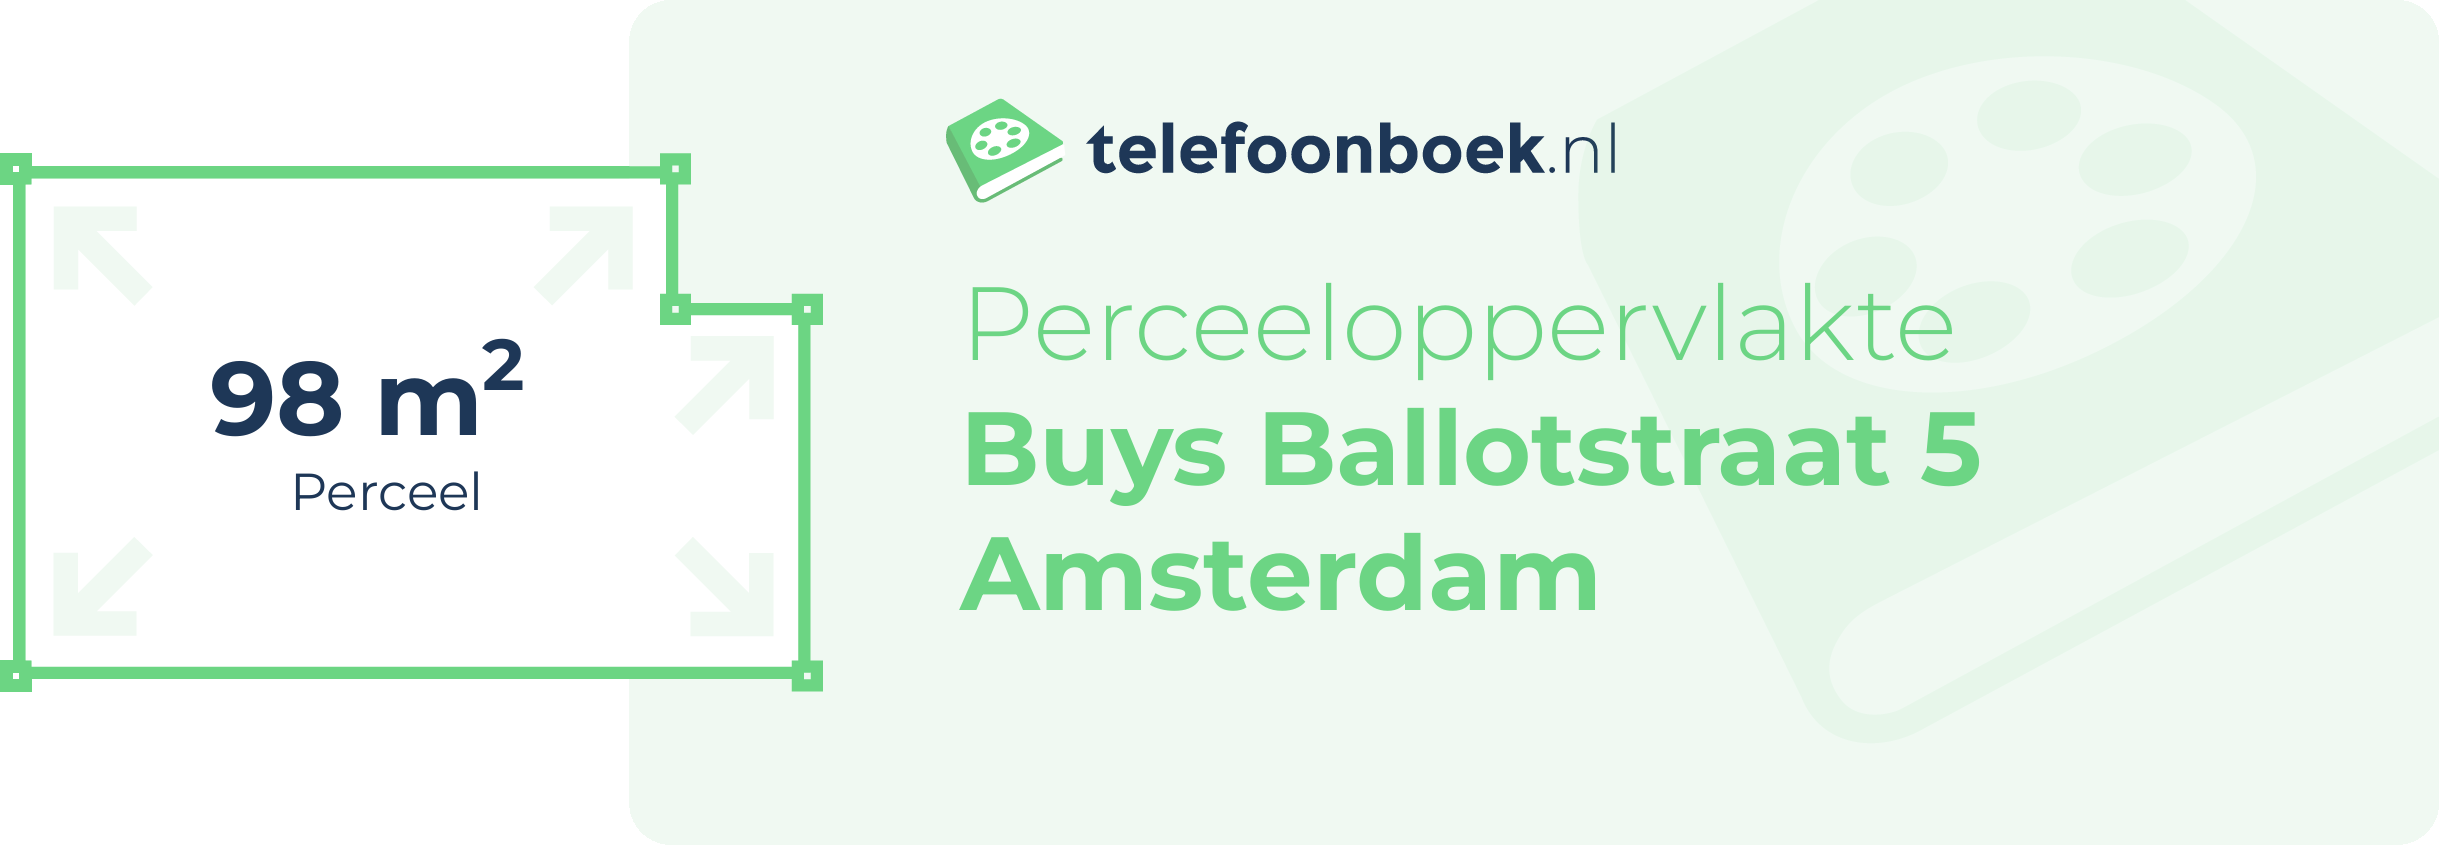 Perceeloppervlakte Buys Ballotstraat 5 Amsterdam